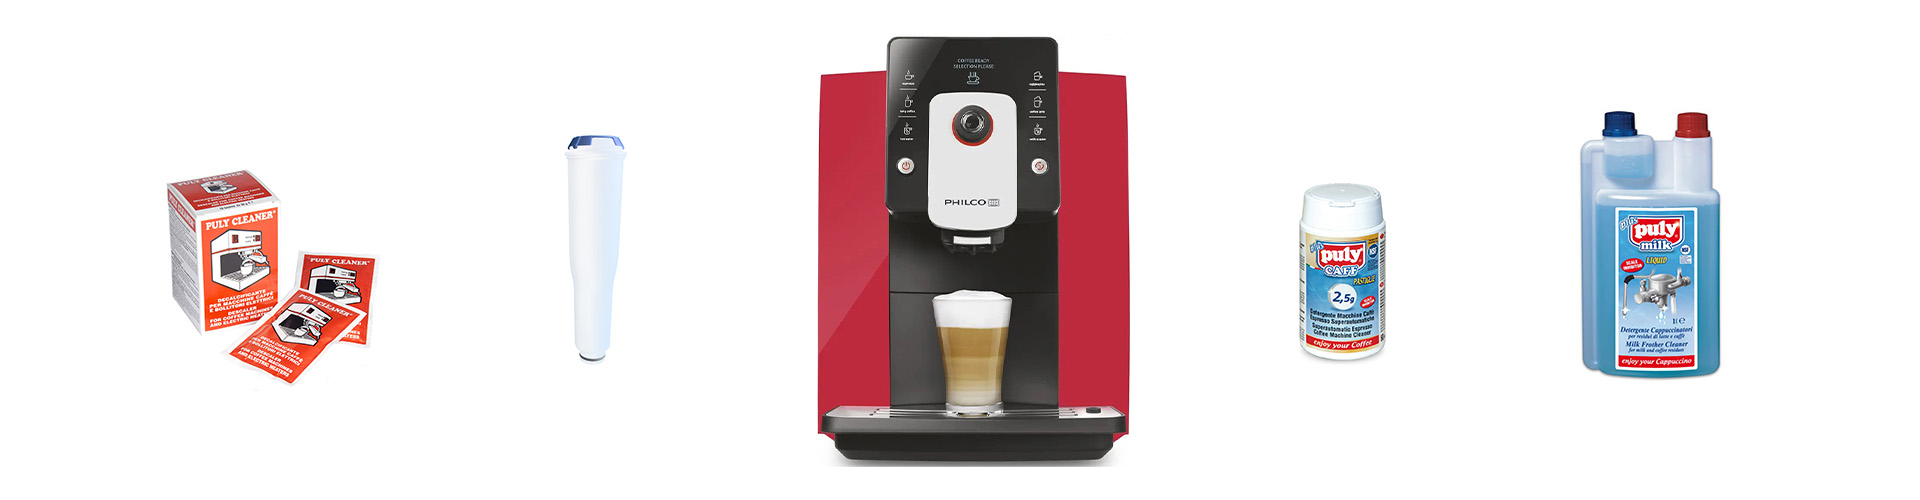 Čištění a údržba: Jak správně vyčistit automatický kávovar?